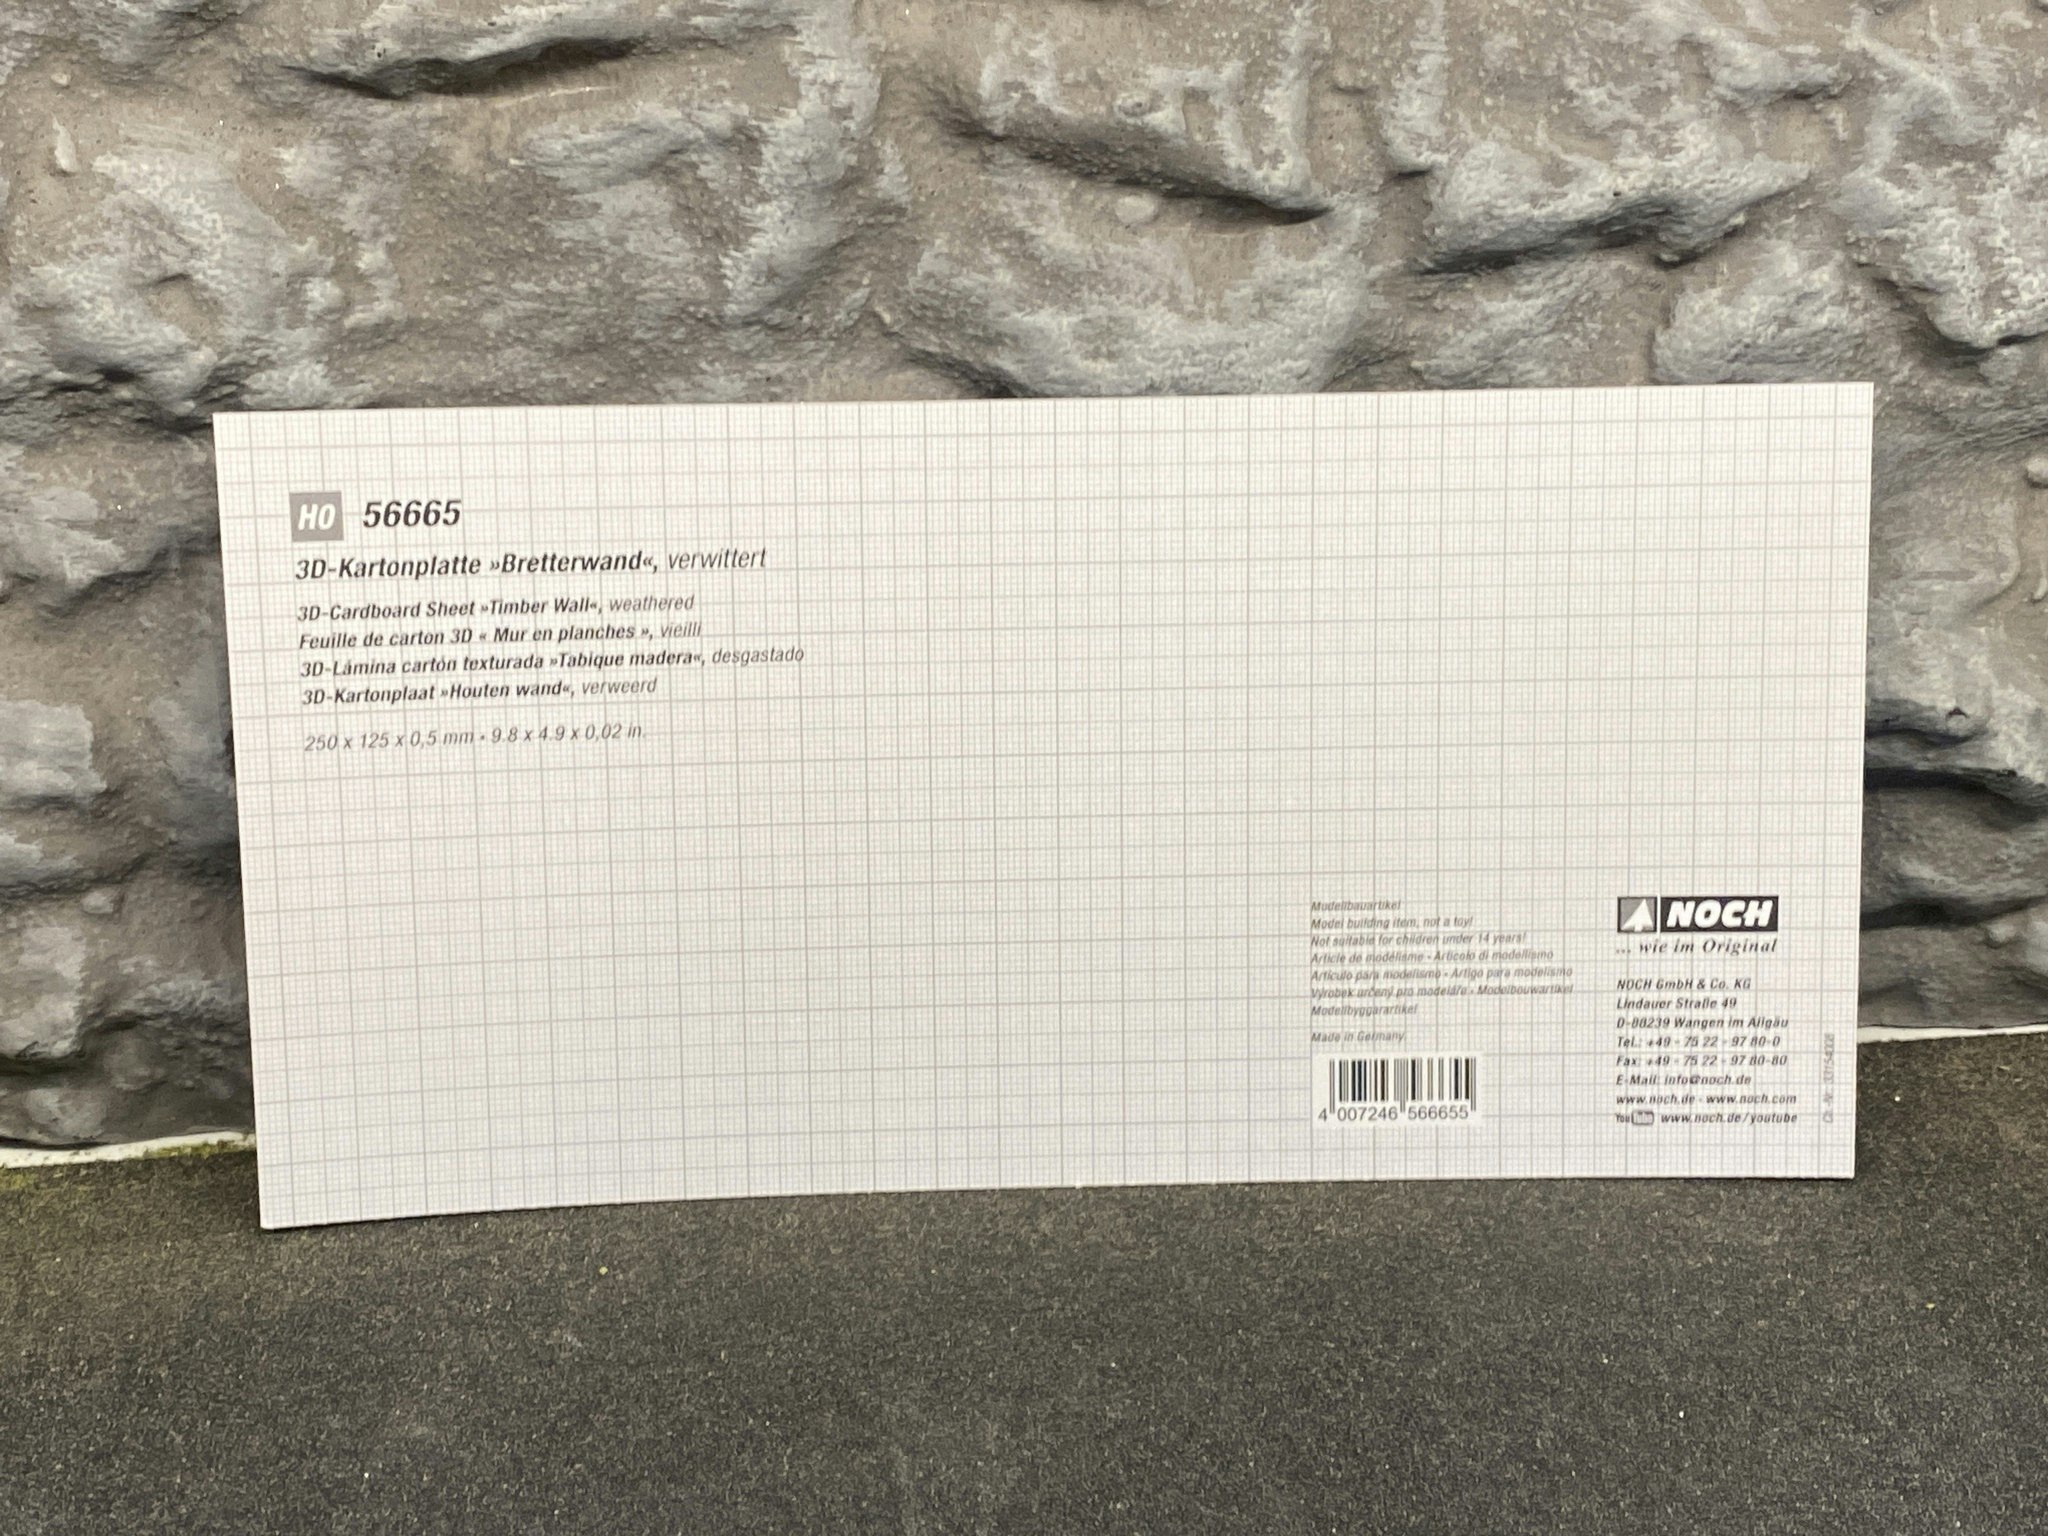 NOCH 56665 Timmerväggar/Timber walls, Wethered - 3D Cardboard Sheet 25x12,5 cm f H0 & TT